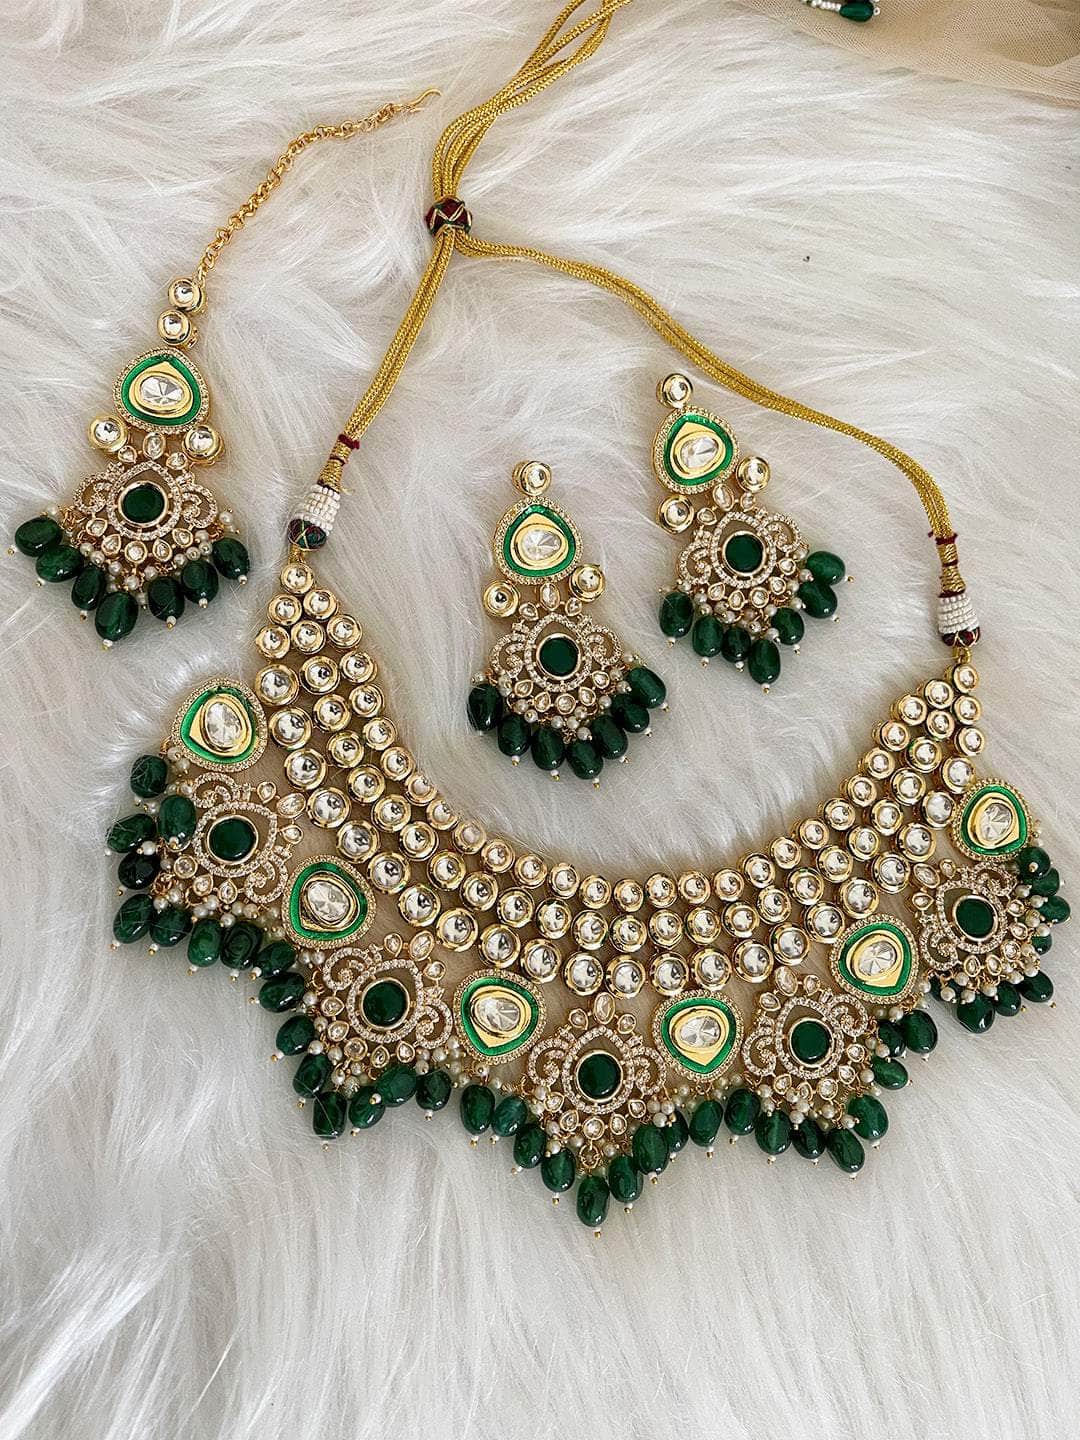 Ishhaara Enchanting Emerald Victorian: The Bottle Green Stones Necklace